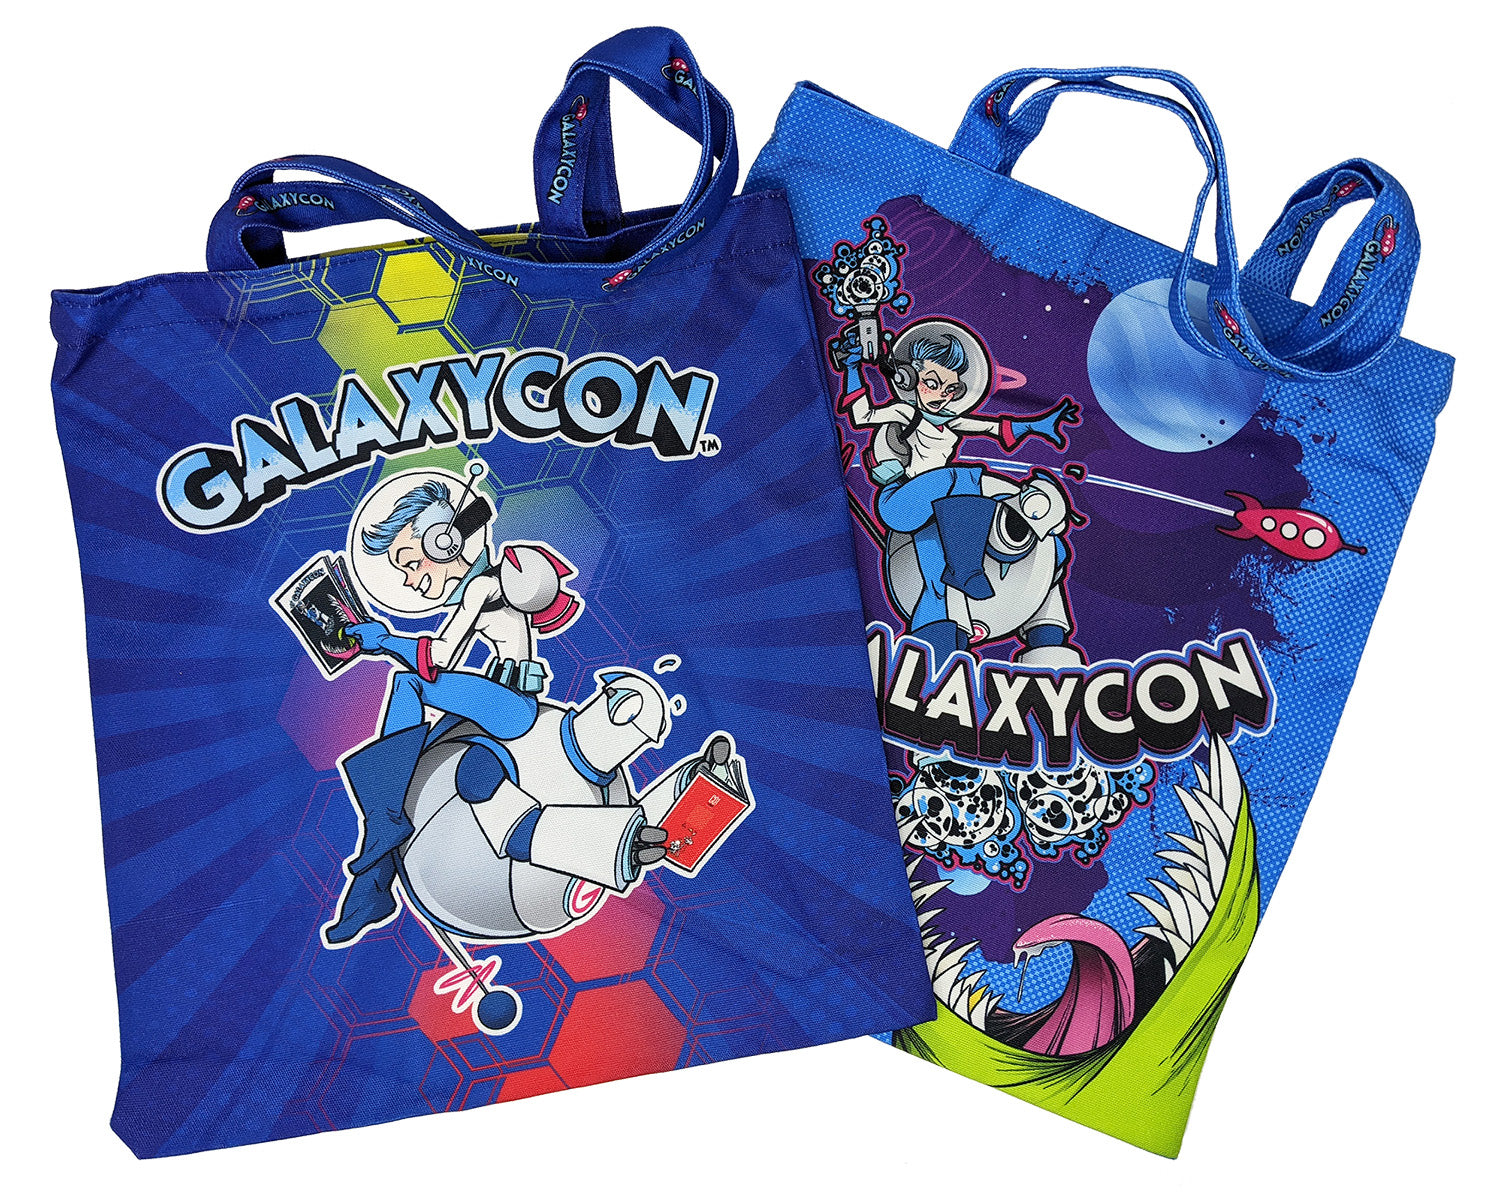 Galaxycon Canvas Tote Bag